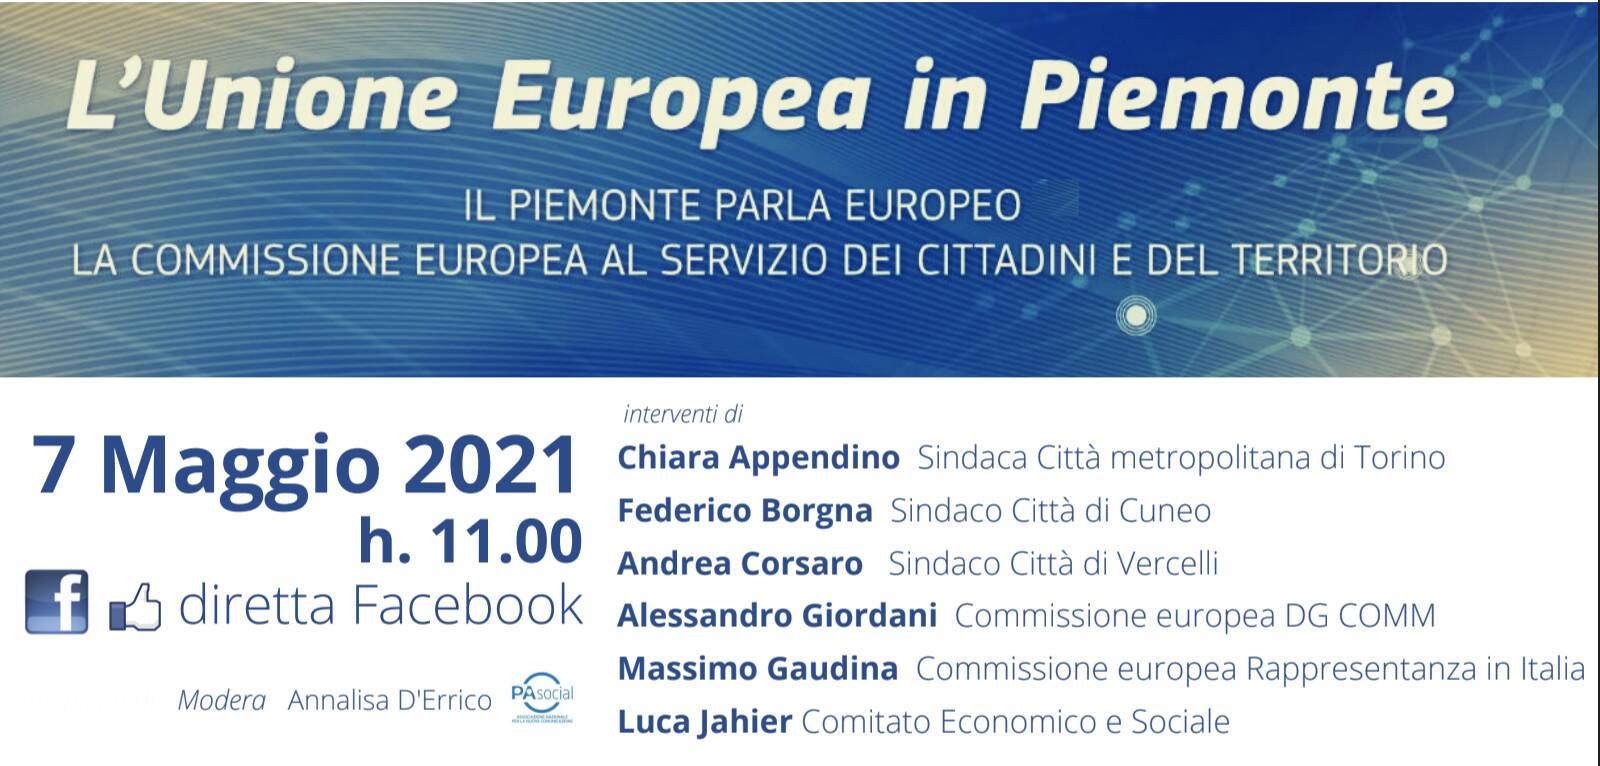 Il Piemonte parla europeo, una rete al servizio dei cittadini e del territorio